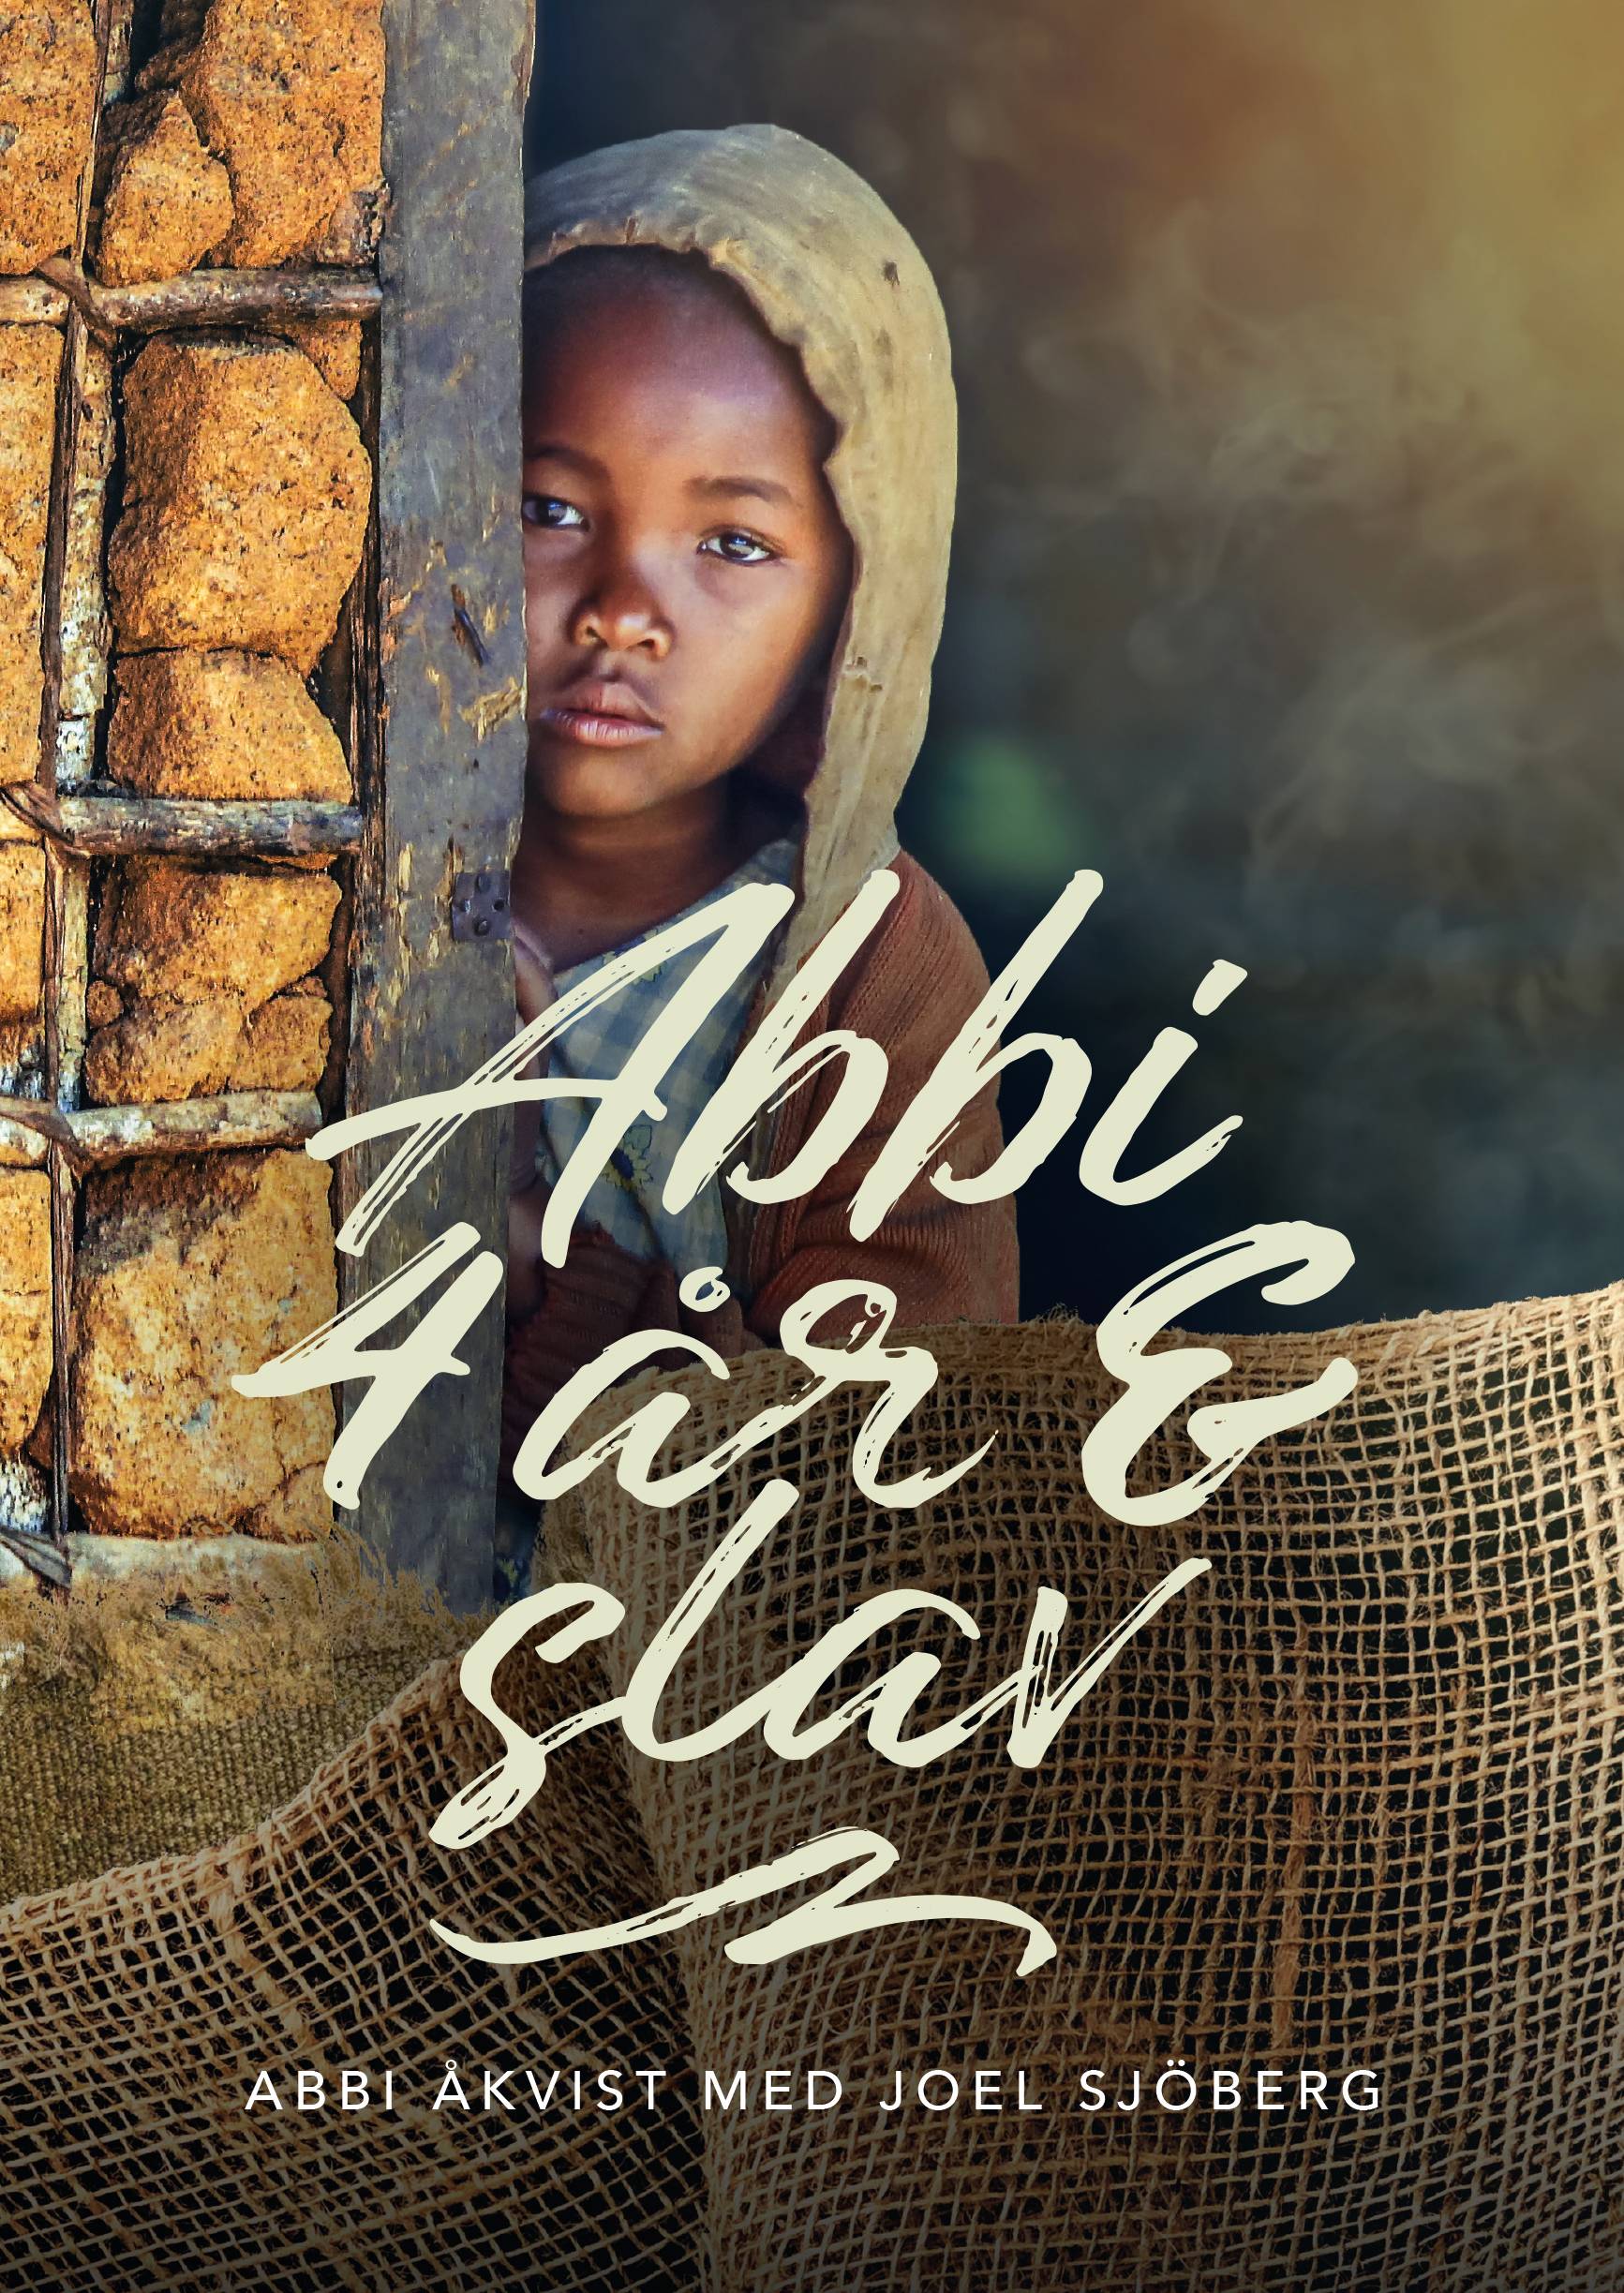 Abbi, 4 år & slav